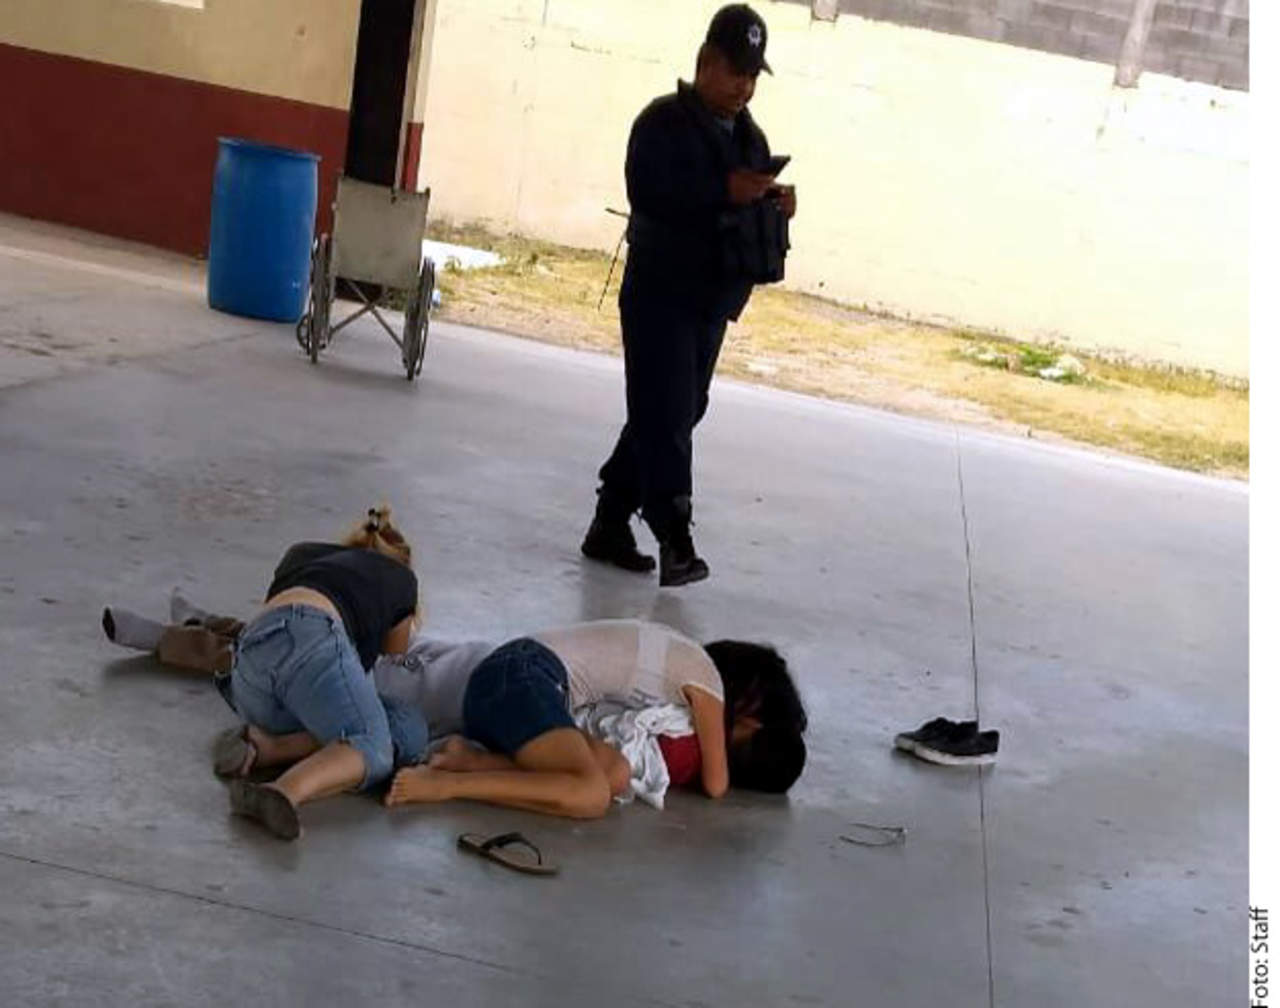 Mata bala perdida a niño en su escuela en Reynosa